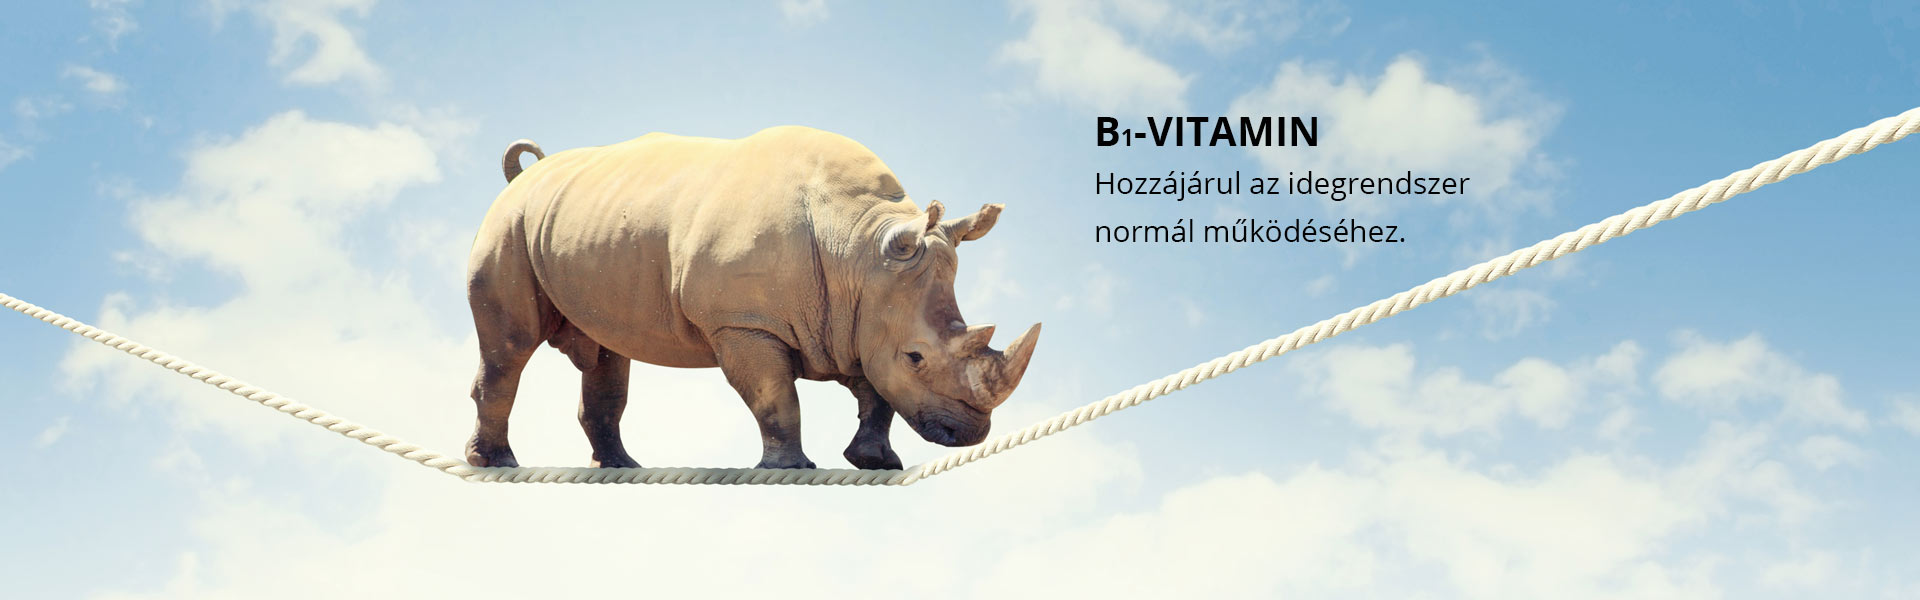 B1-vitamin - hozzájárul az idegrendszer normál működéséhez